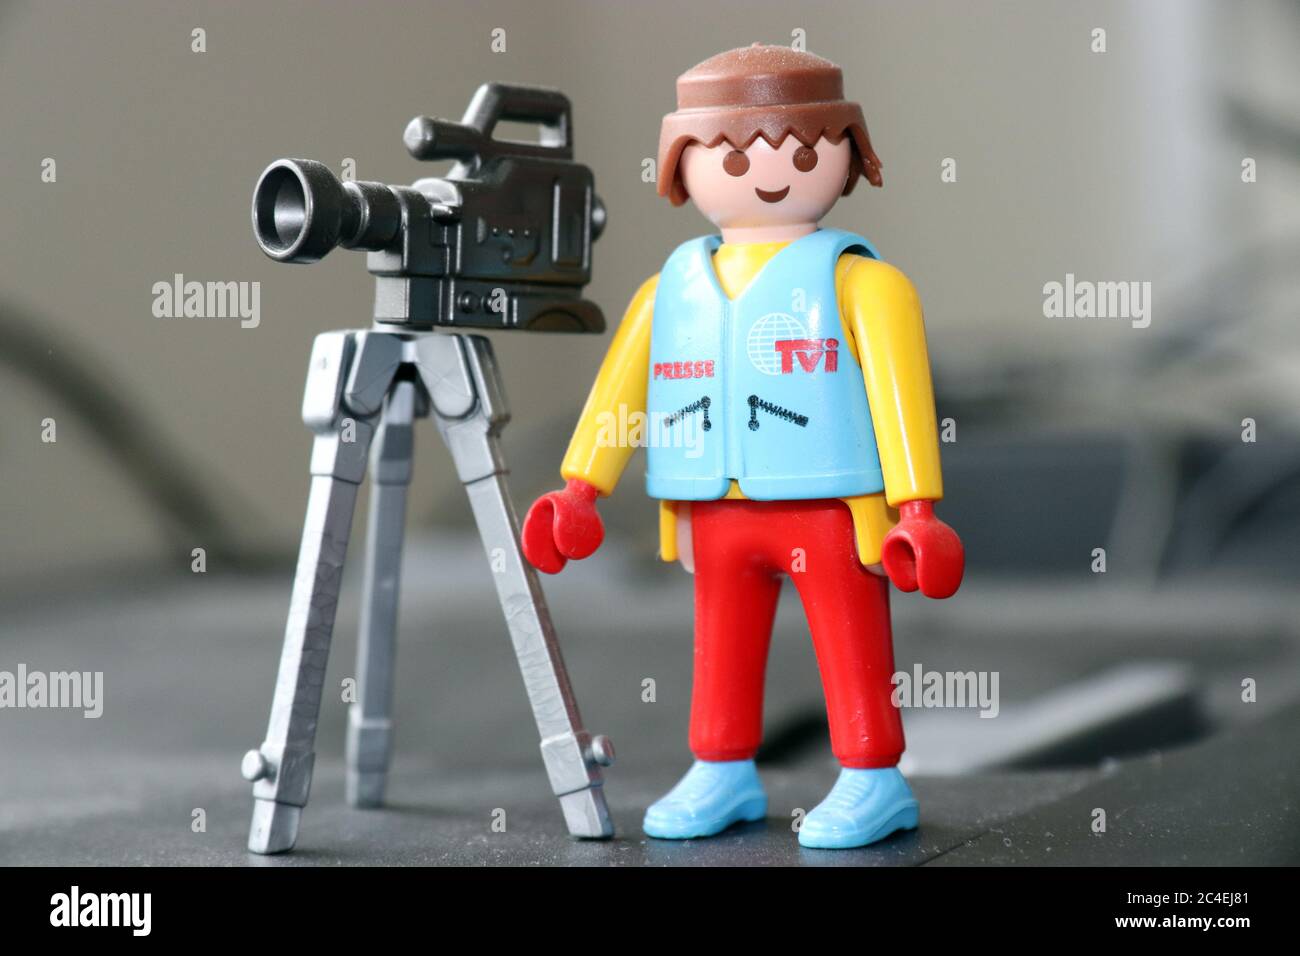 Playmobil TV cameraman Stock Photo - Alamy